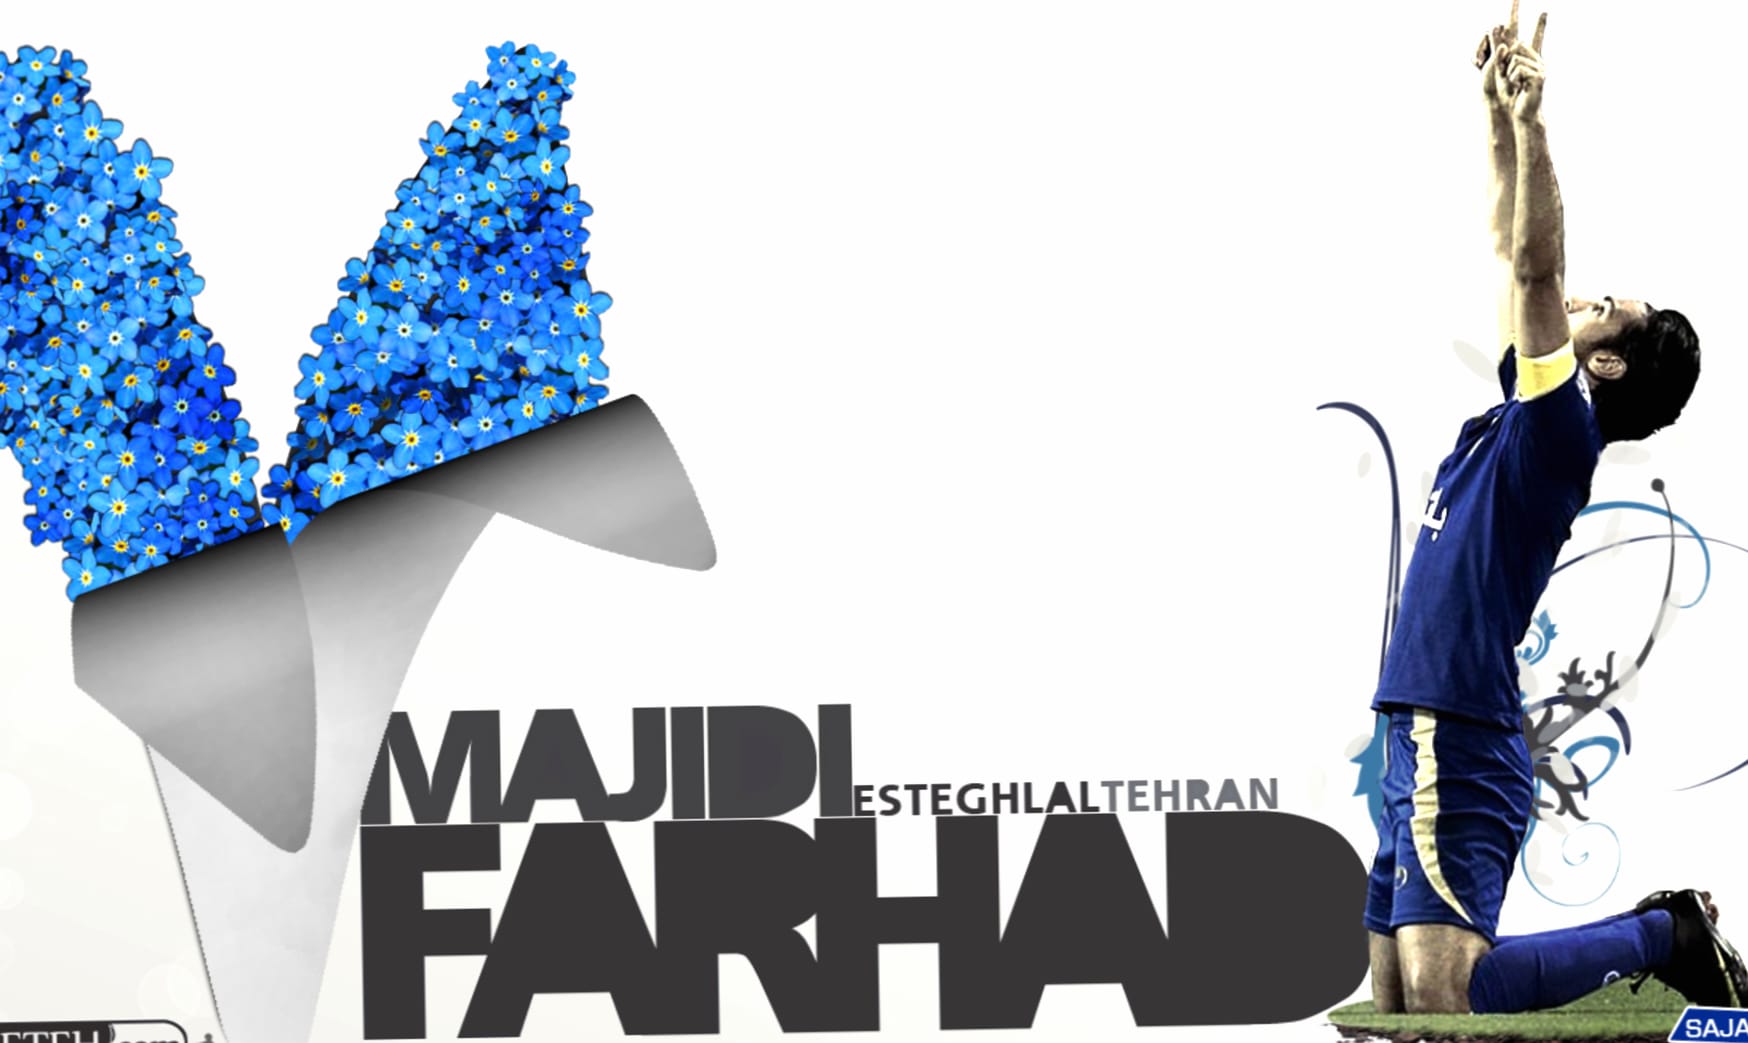 Farhad Majidi at 1280 x 960 size wallpapers HD quality